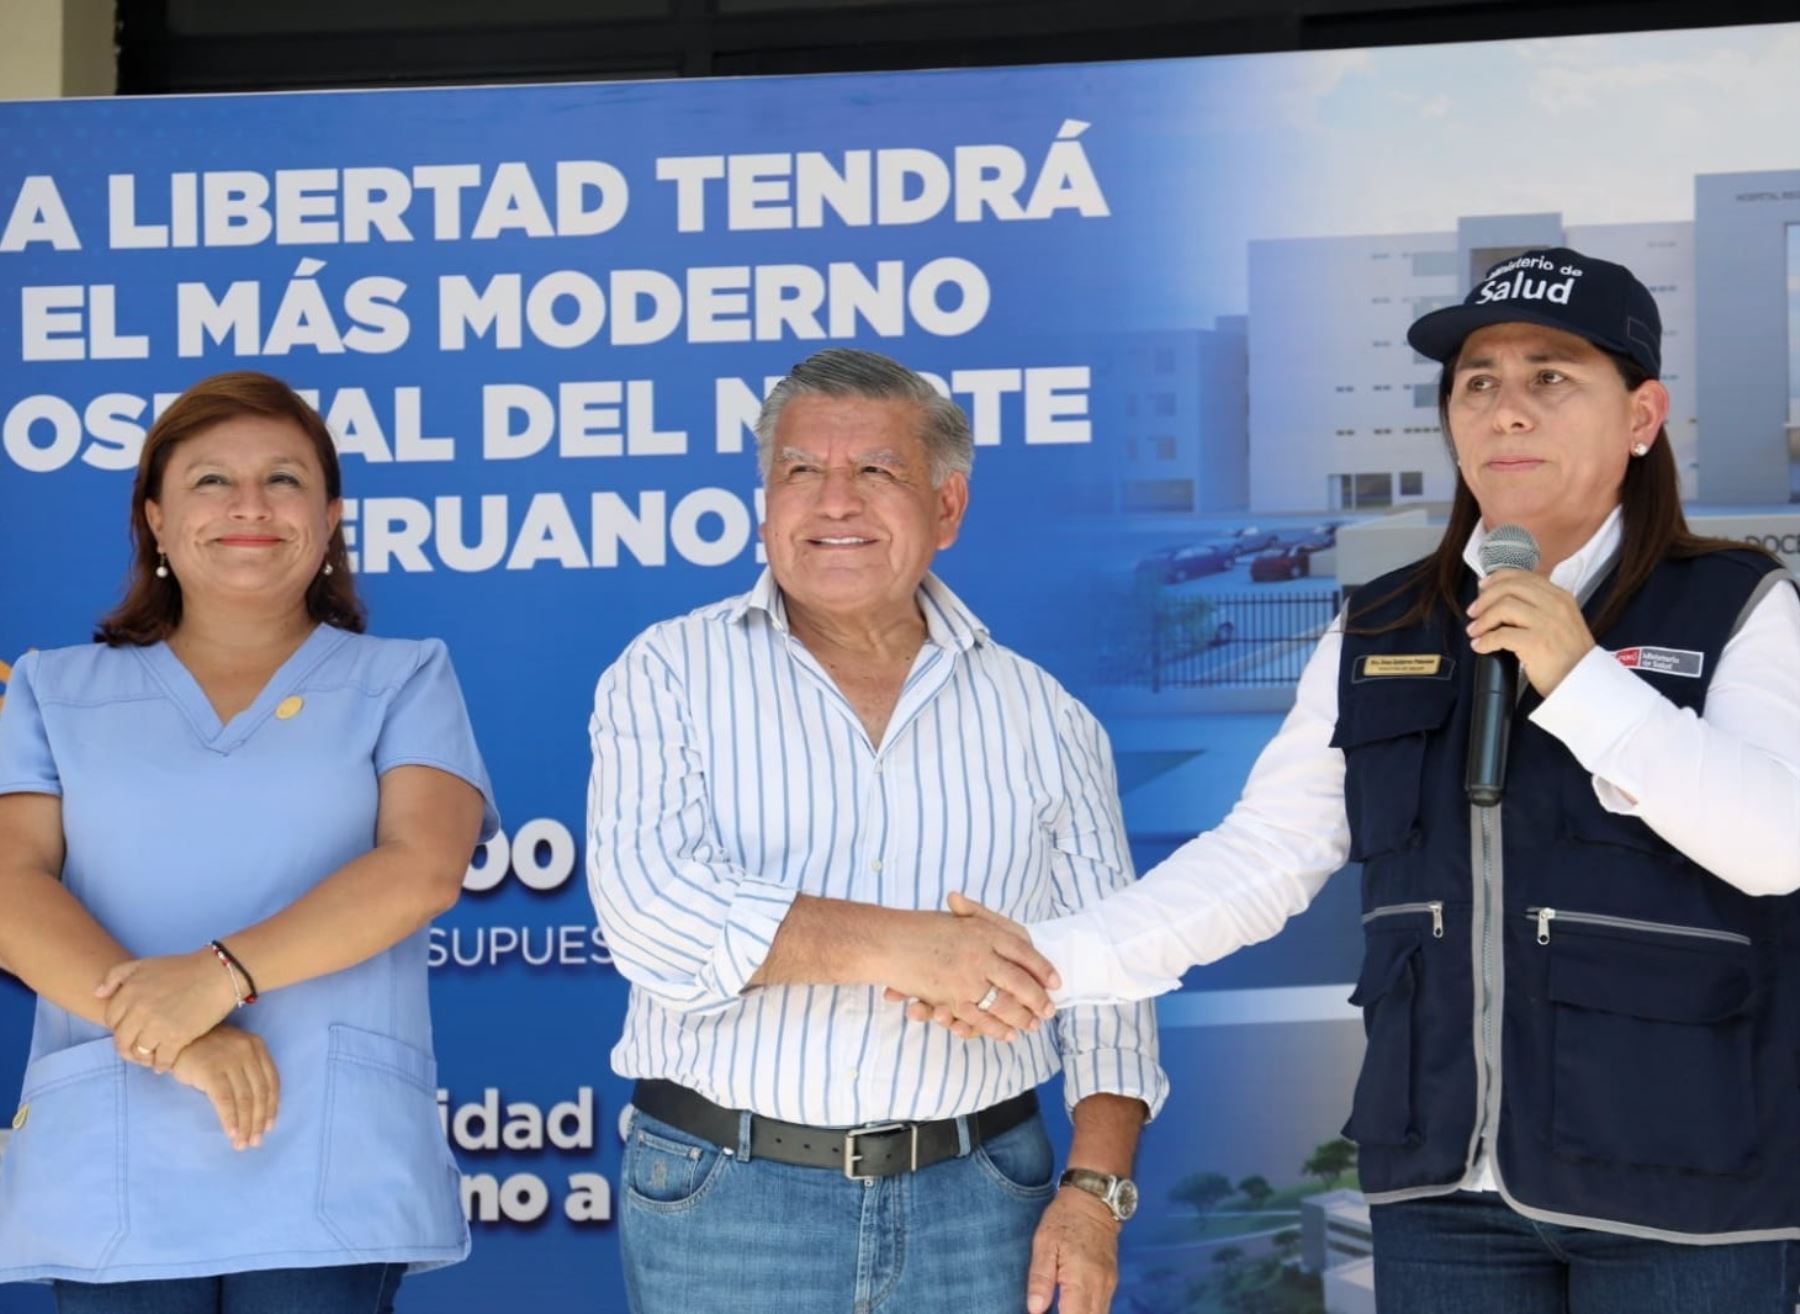 El Ministerio de Salud y el Gobierno Regional de La Libertad firmaron un convenio para la construcción del nuevo Hospital Regional Docente de Trujillo. Foto: Luis Puell.